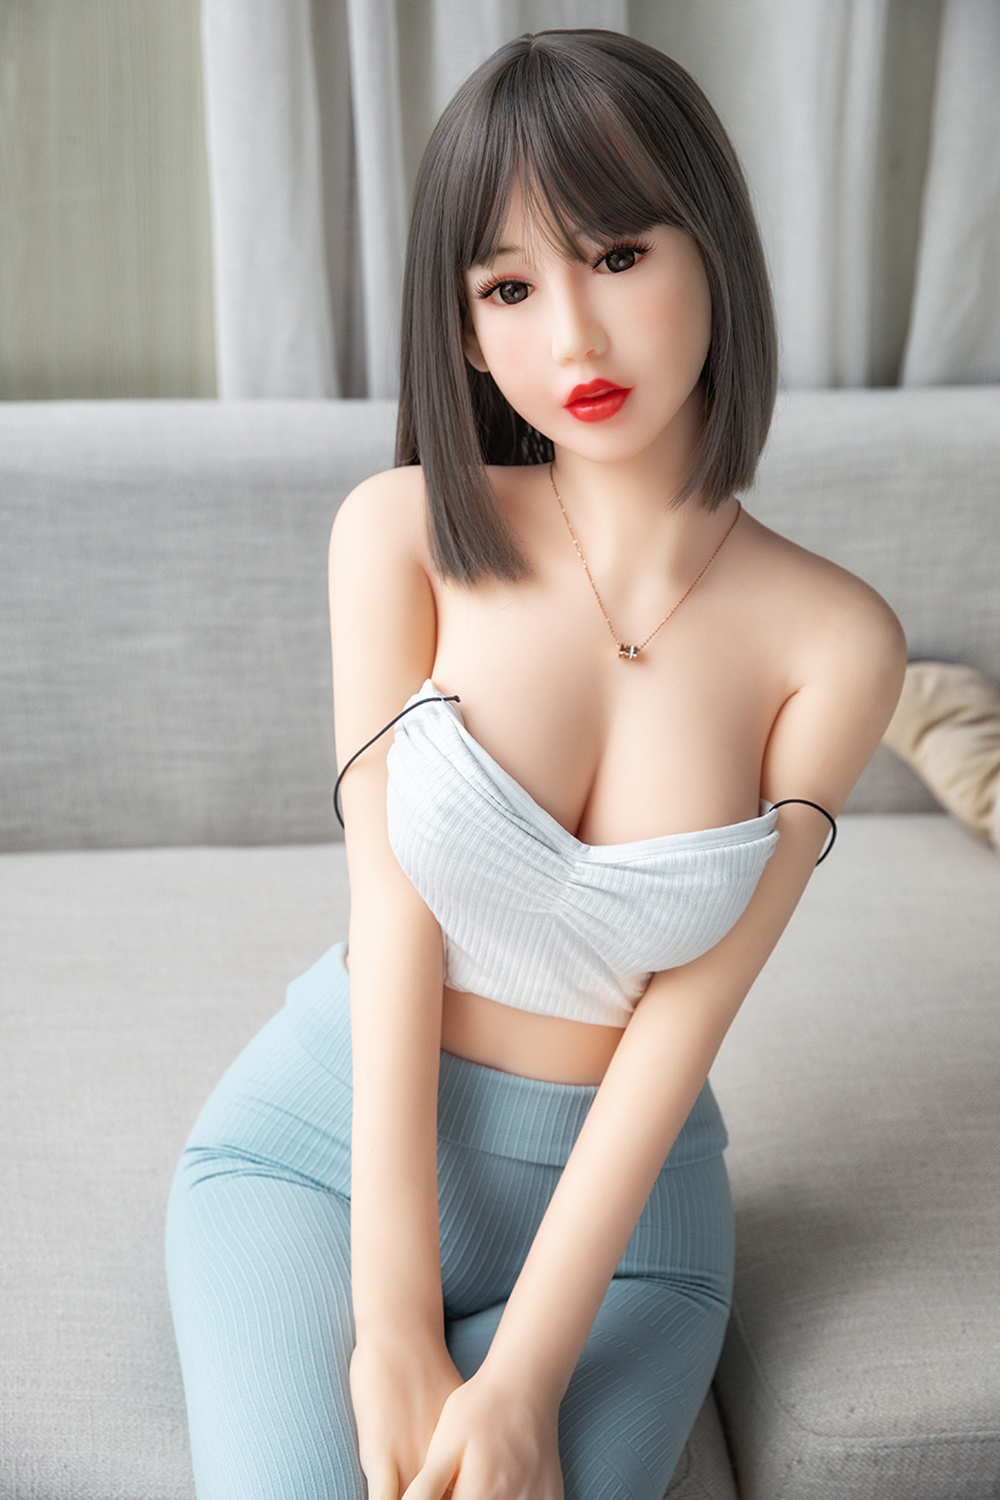 Asiatische sex doll